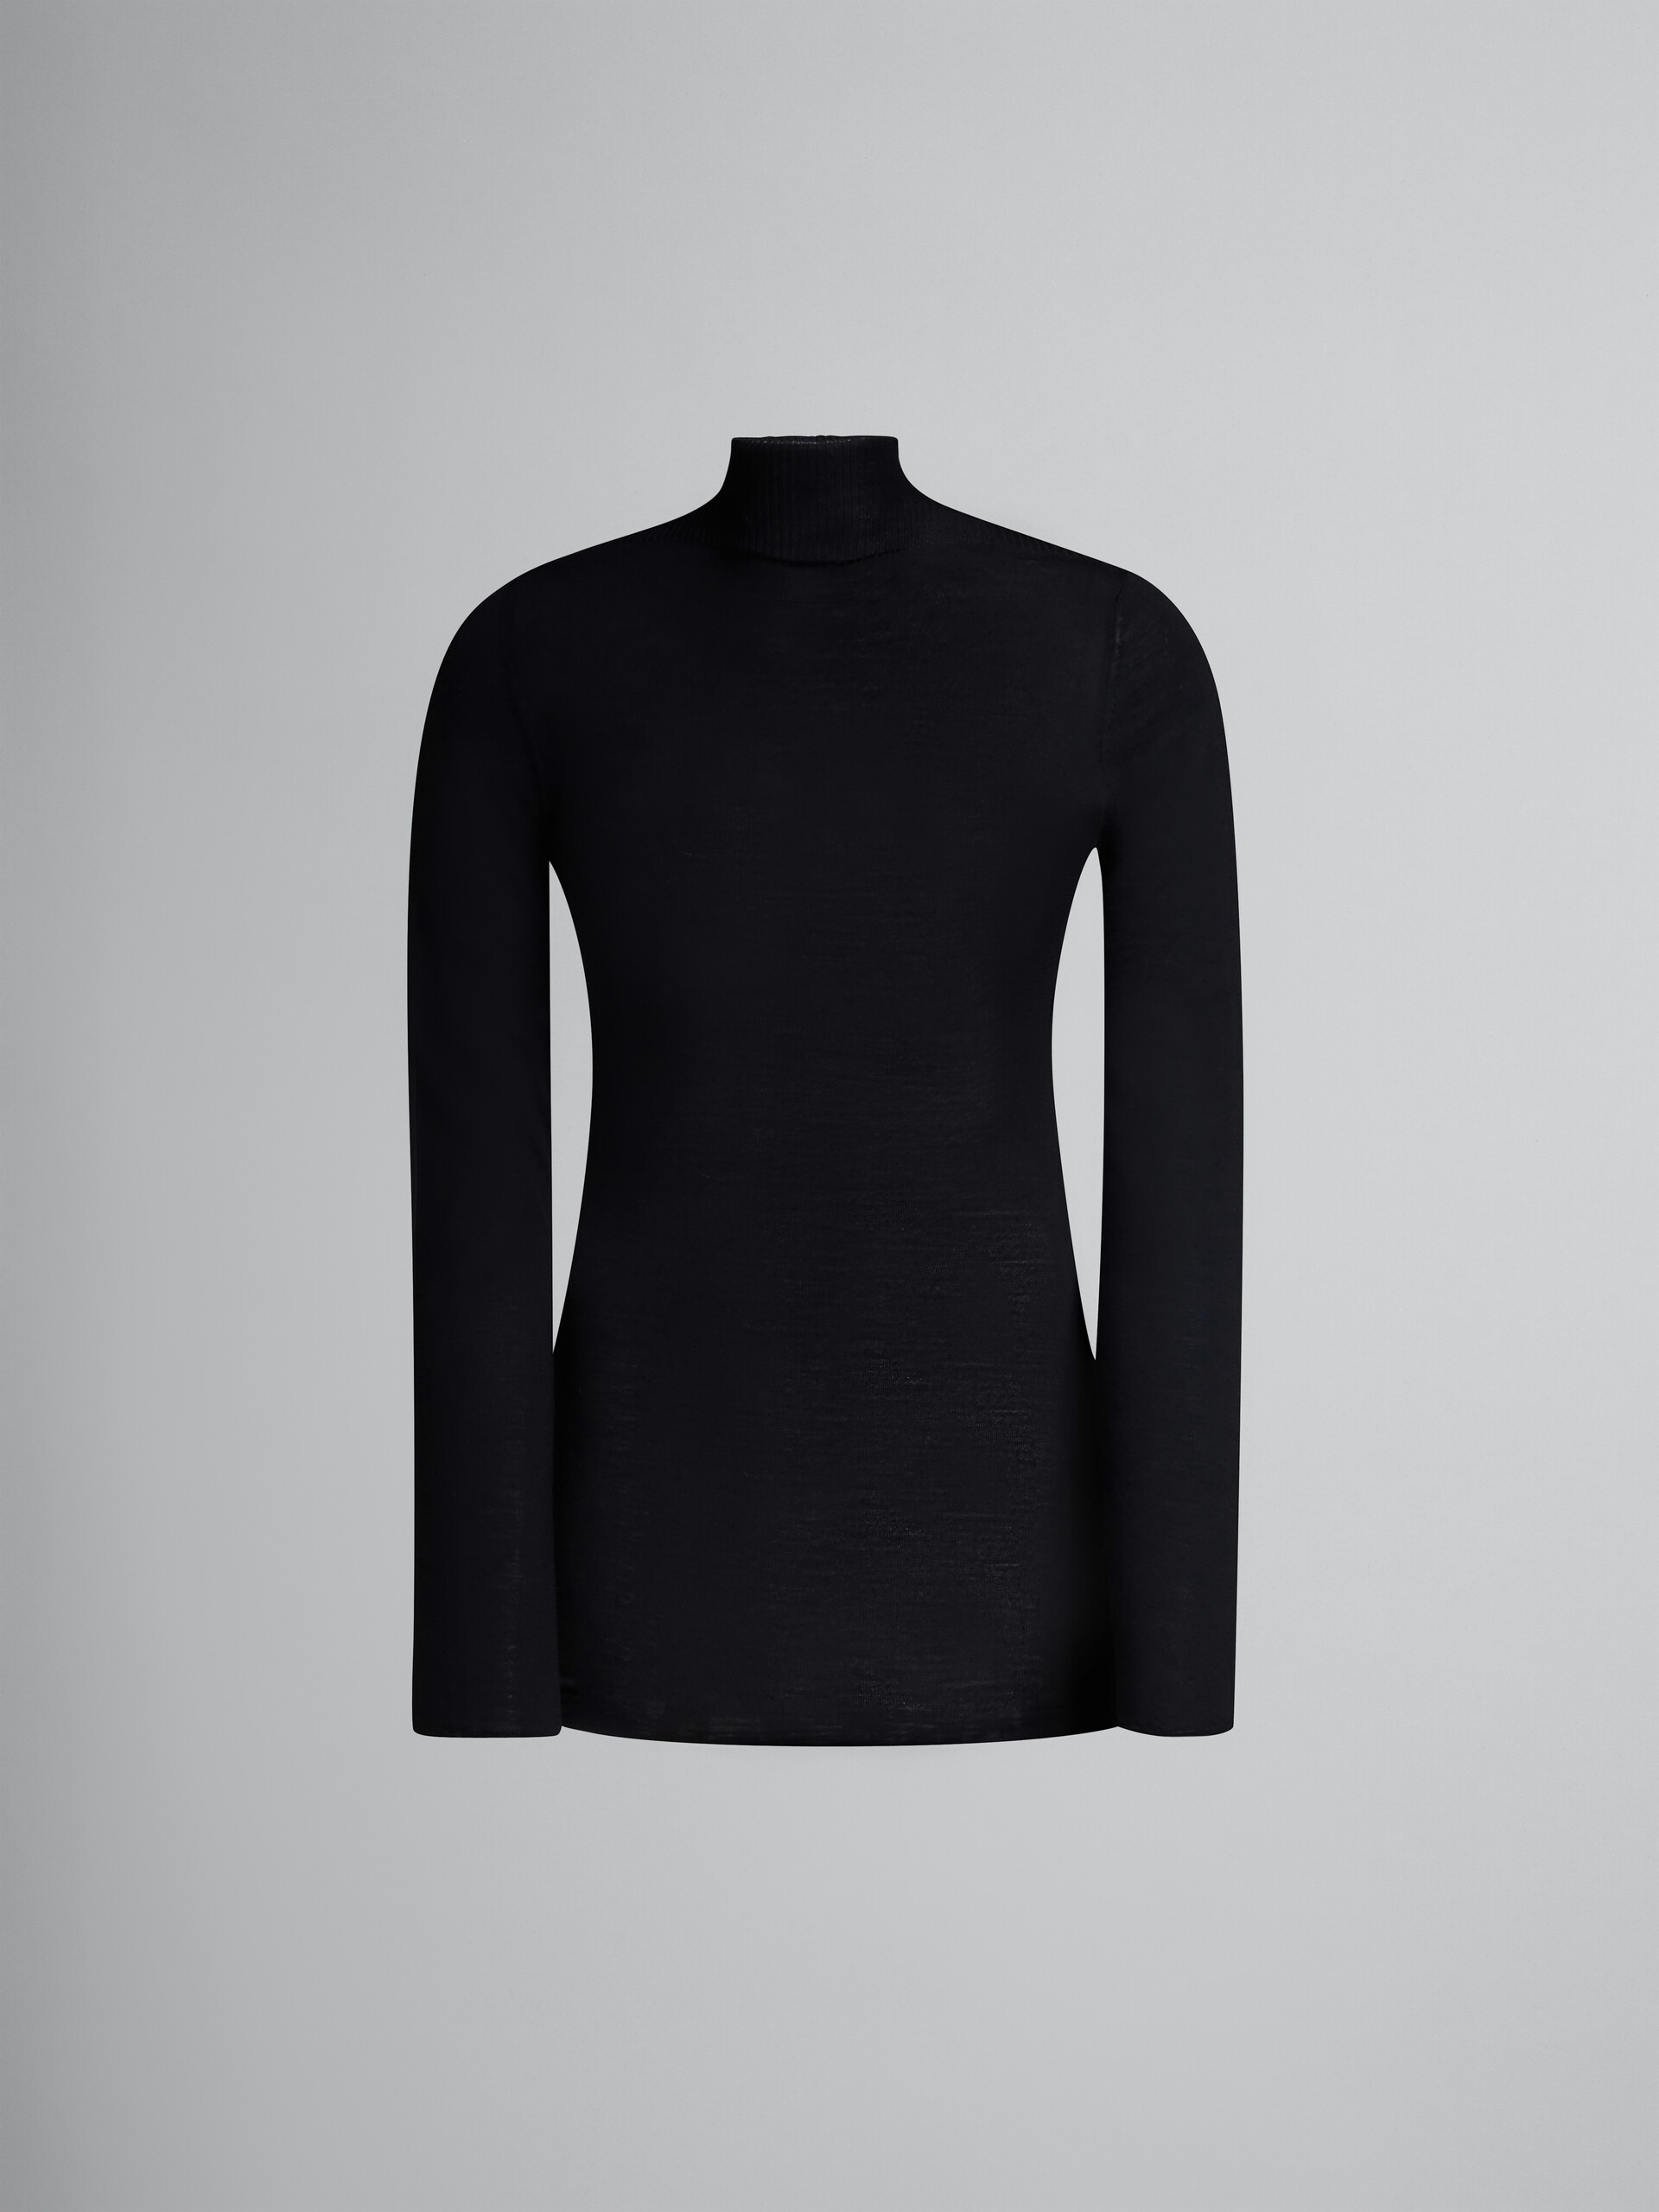 Schwarzer Rollkragenpullover aus Wolle - Pullover - Image 1